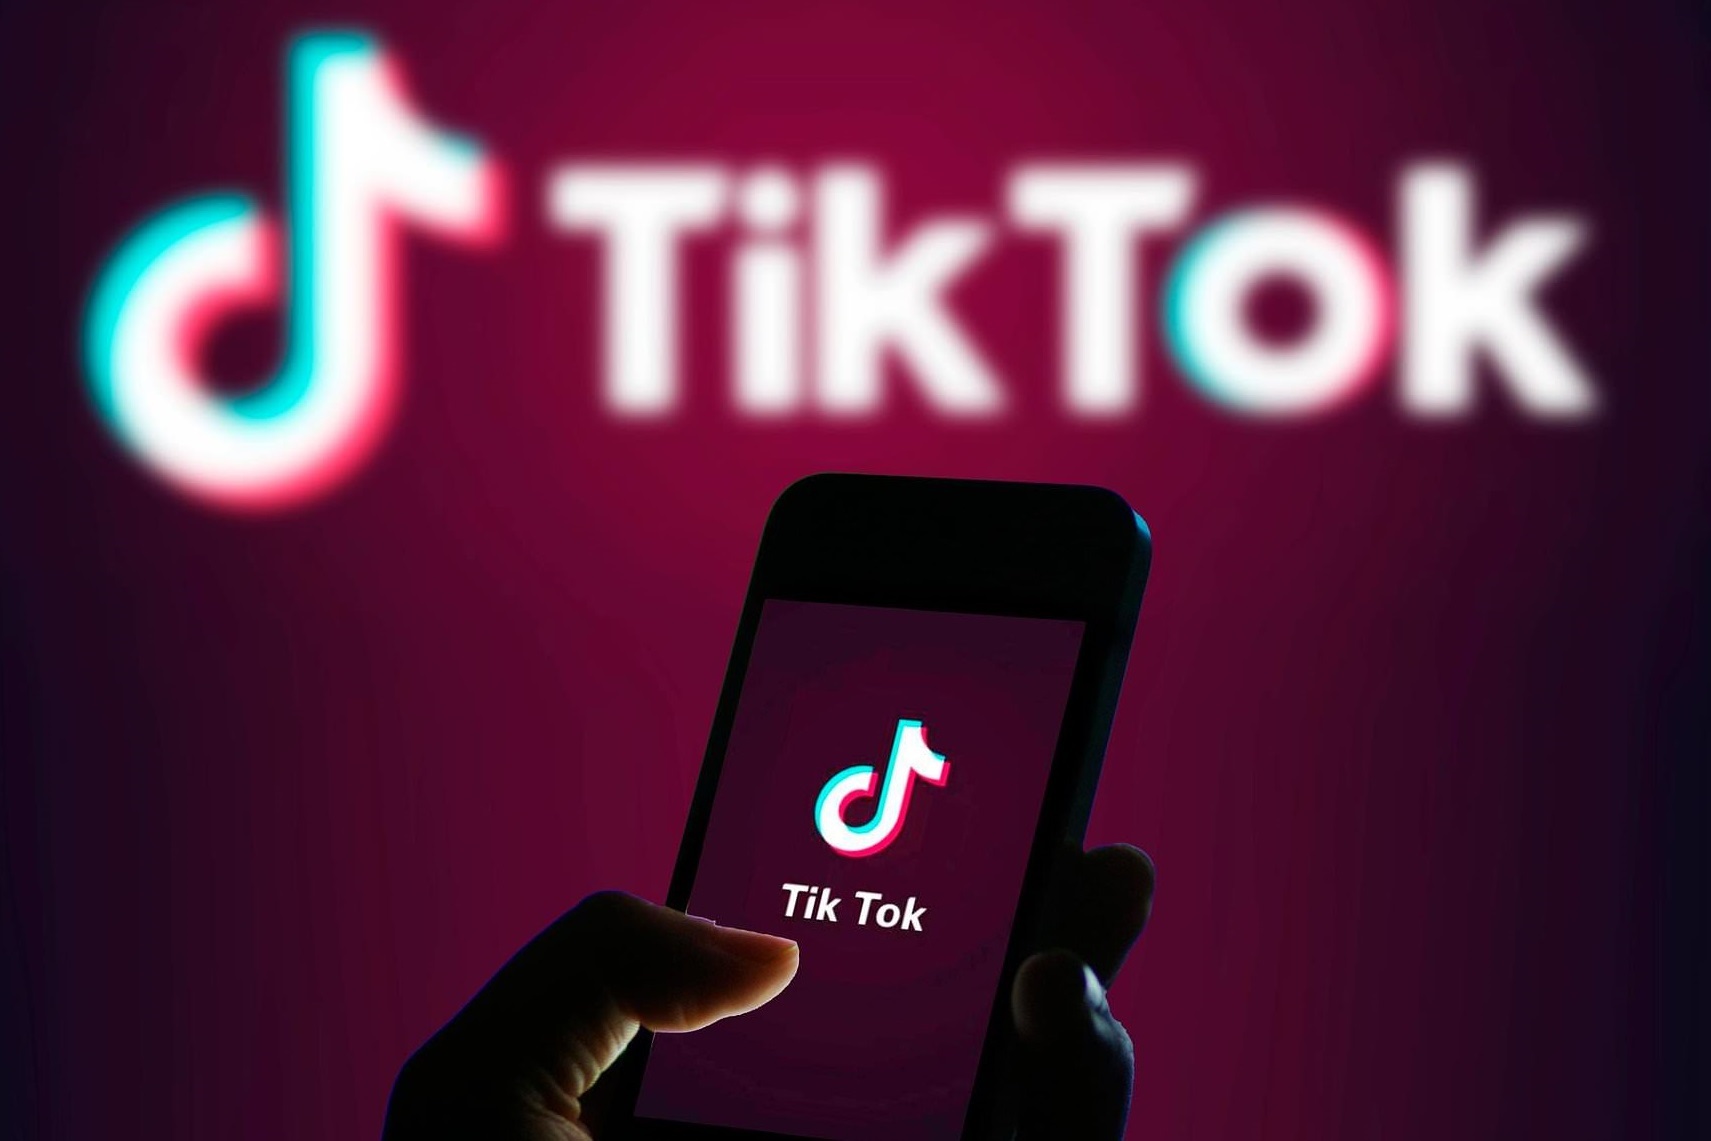 VNG kiện TikTok vi phạm bản quyền âm nhạc ở Việt Nam